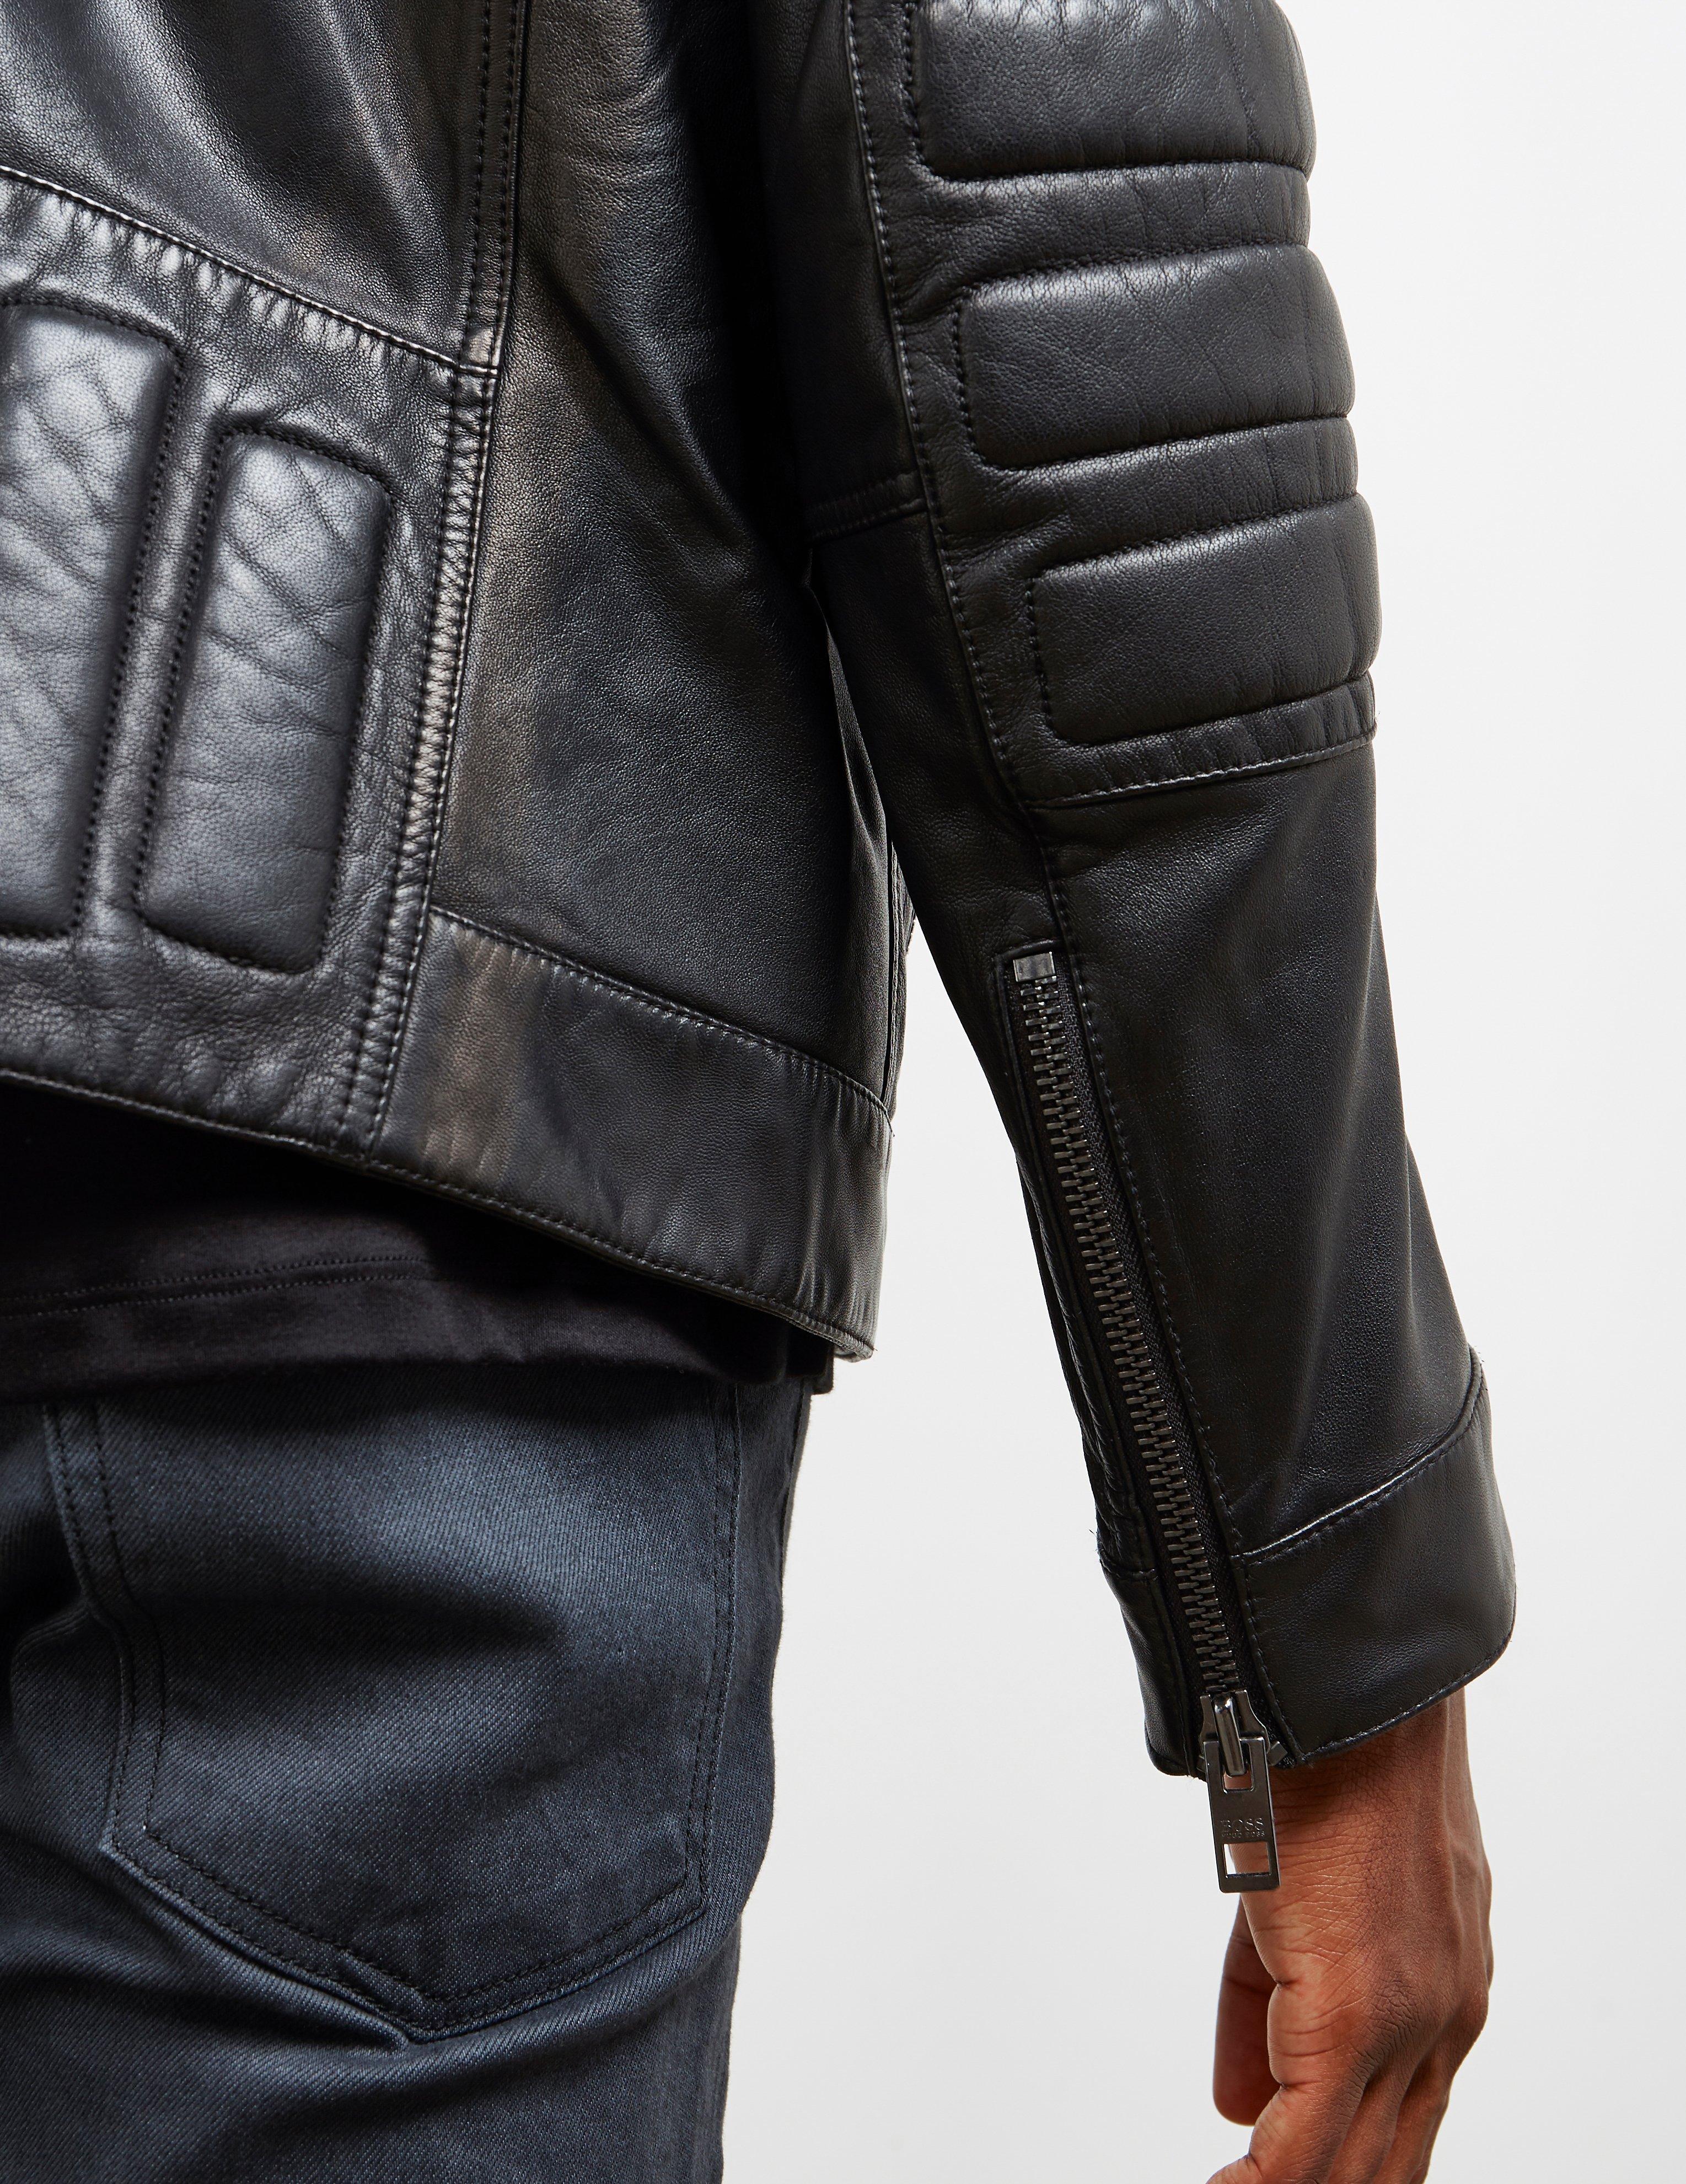 hugo boss jagson leather jacket